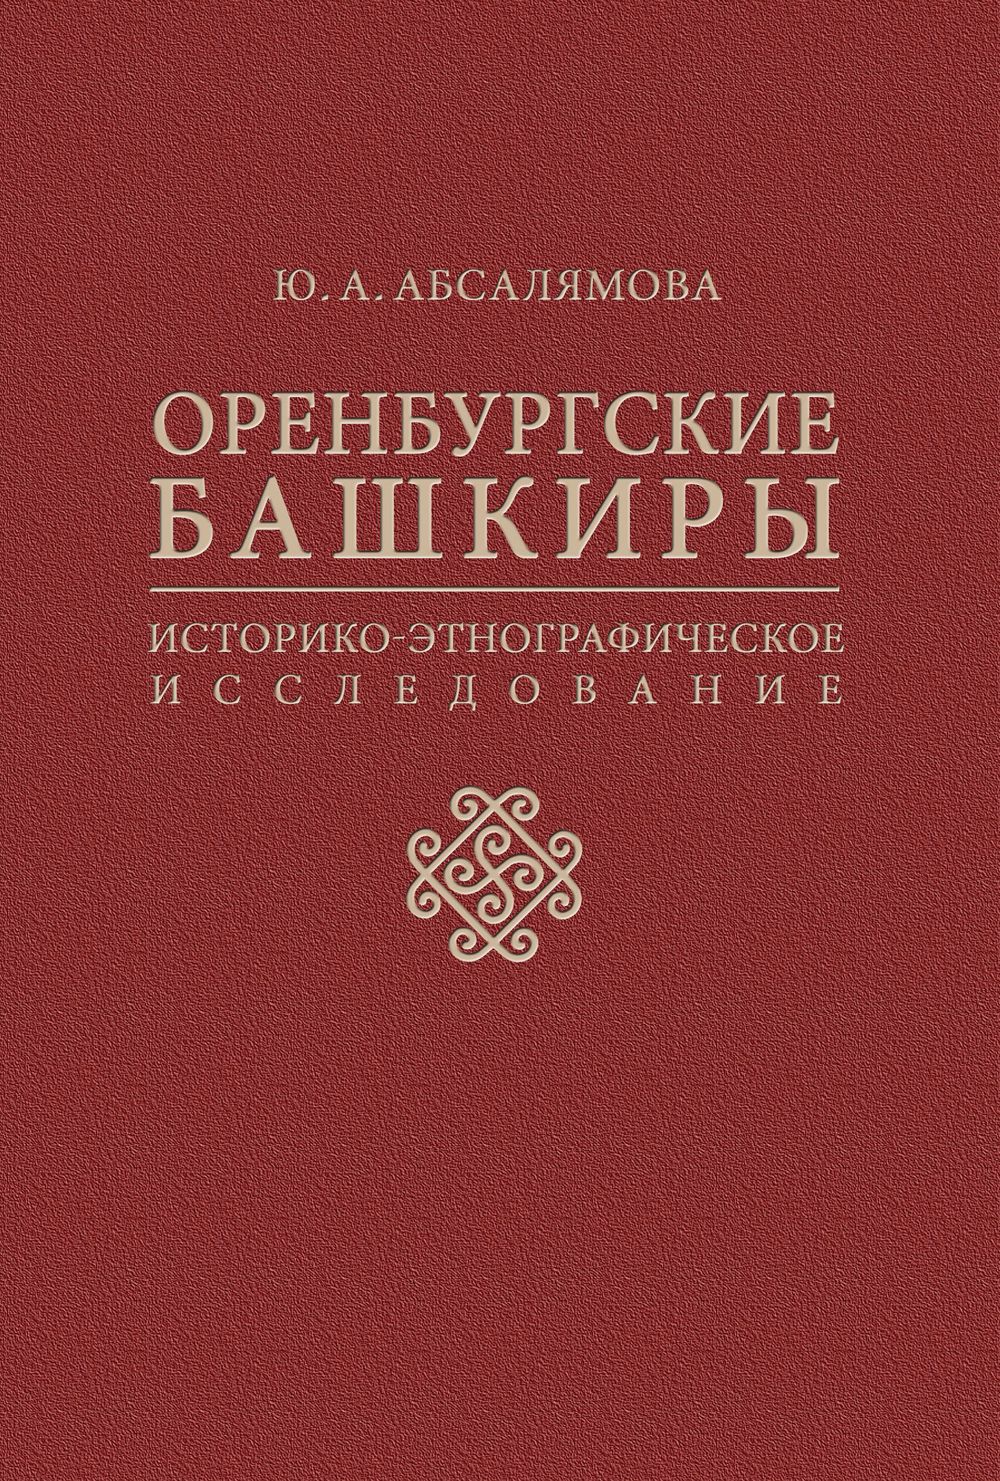 Оренбургские башкиры: историко-этнографическое исследование